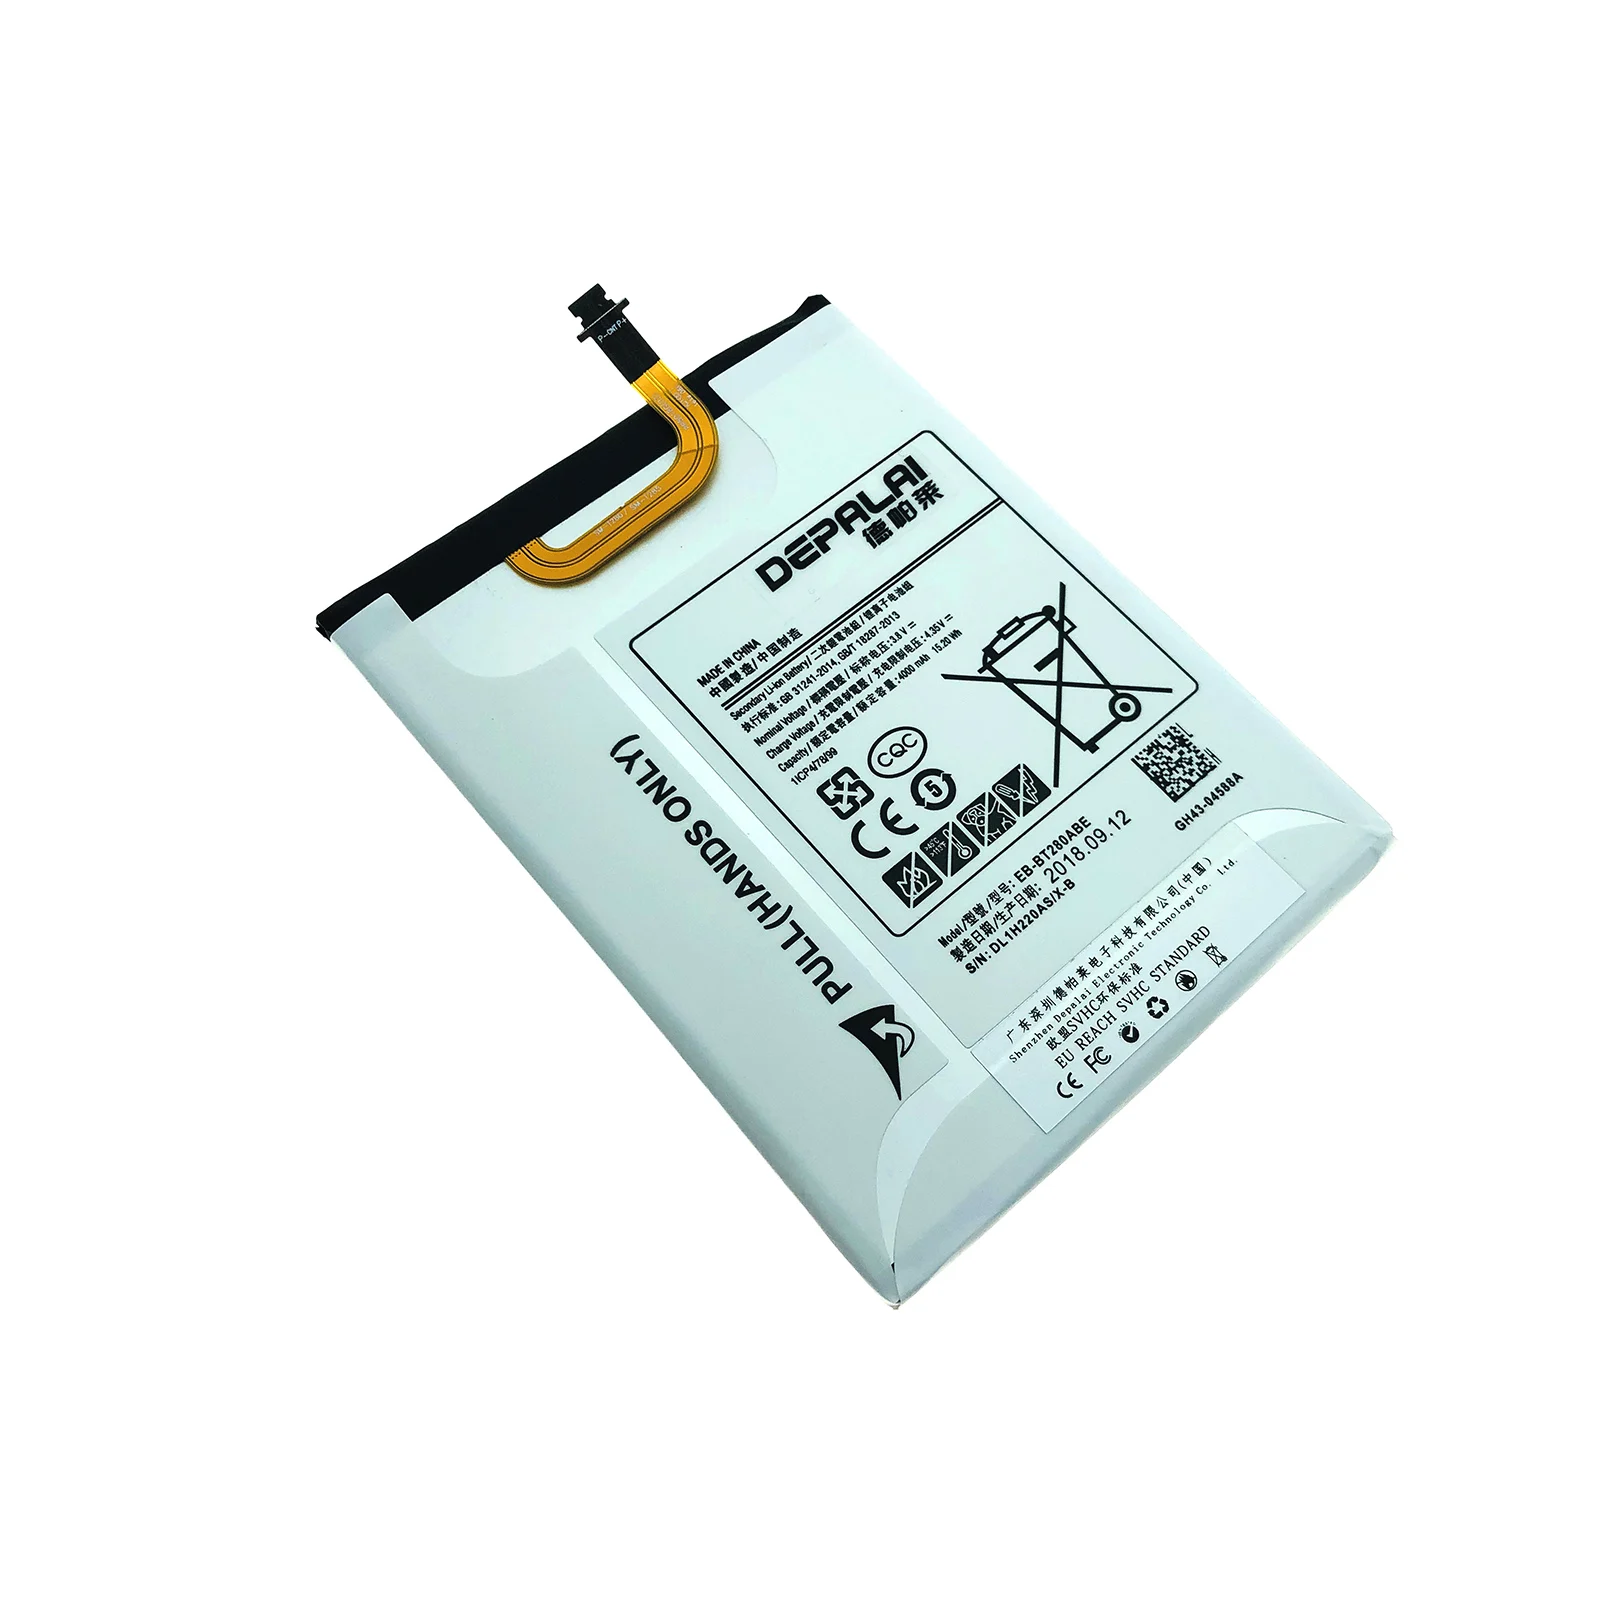 Batería de Polímero de litio de Repuesto Para Tableta Samsung Galaxy Tab 7.0 T280 T285 EB-BT280ABE batería de 4000mAh 2